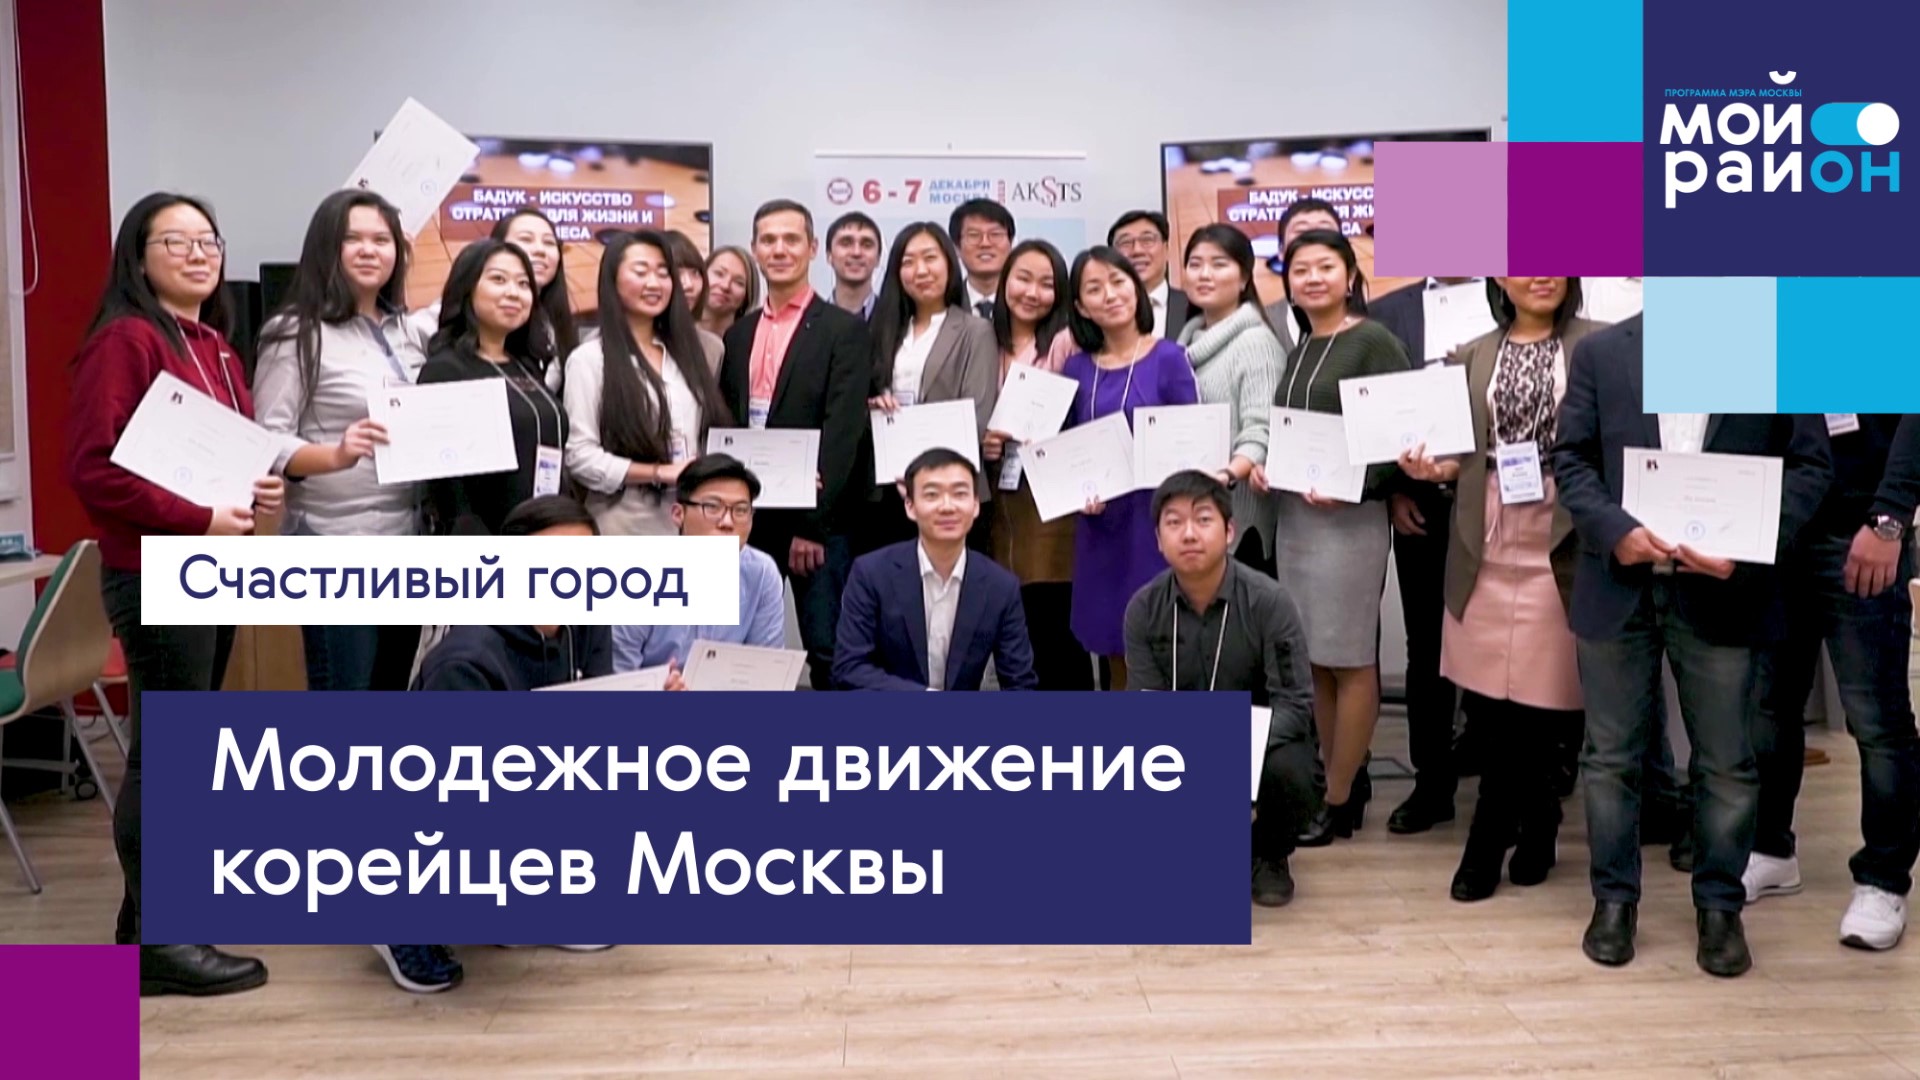 Проекты, которые меняют жизнь: «Молодёжное движение корейцев Москвы»